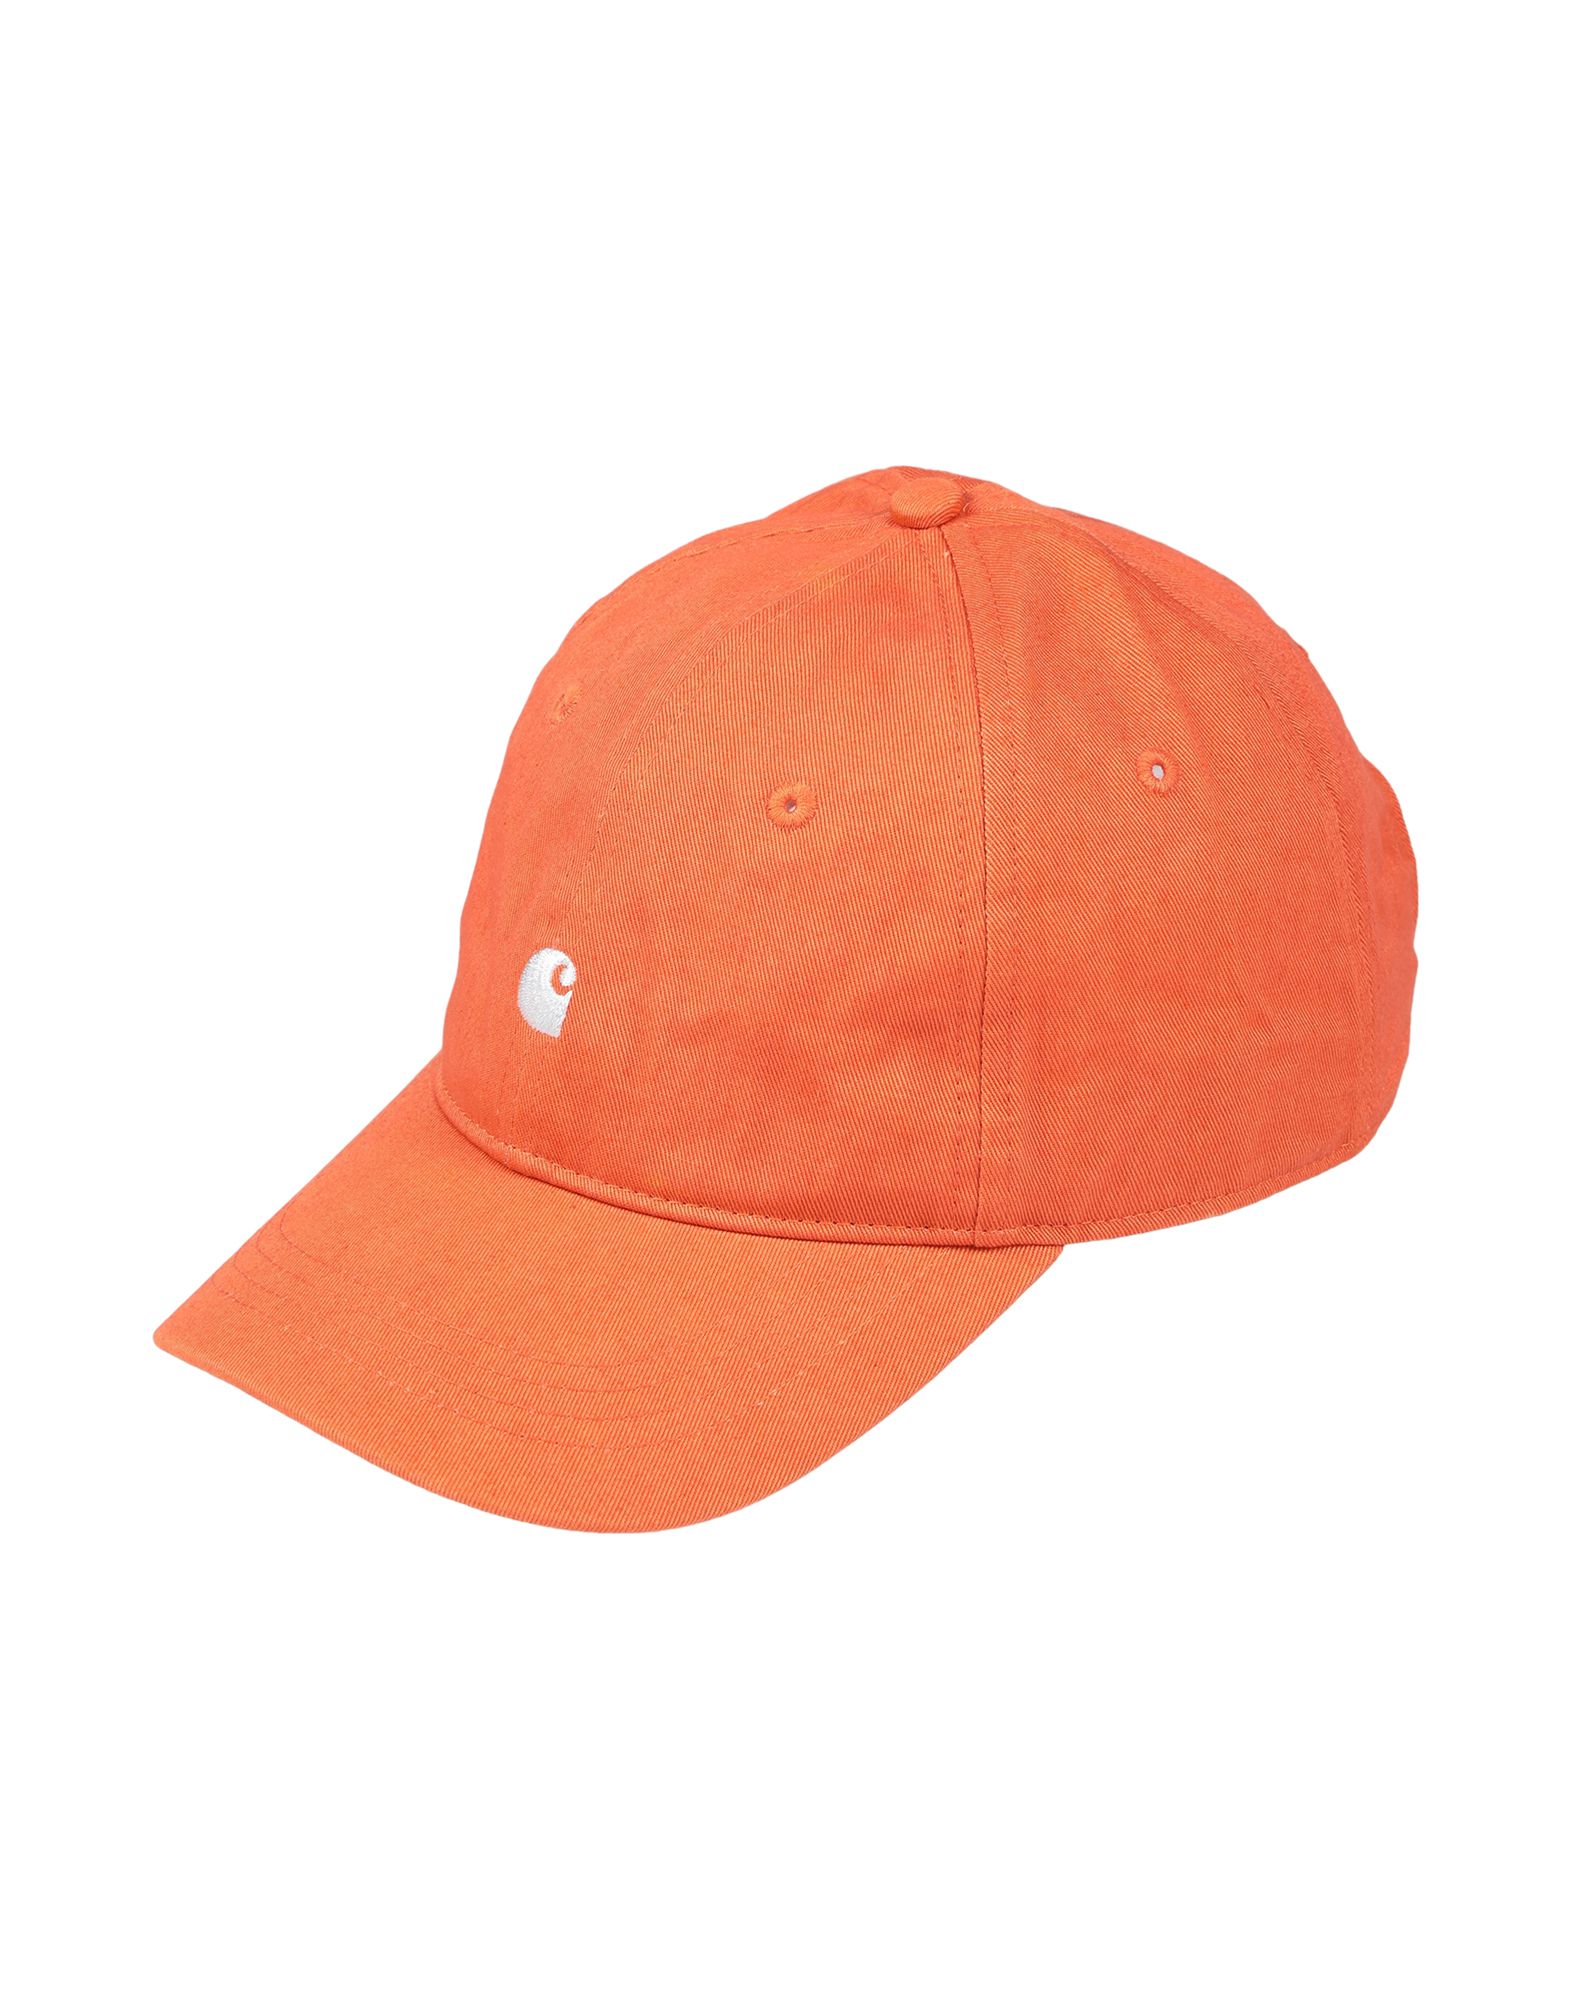 《送料無料》CARHARTT メンズ 帽子 オレンジ one size コットン 100%